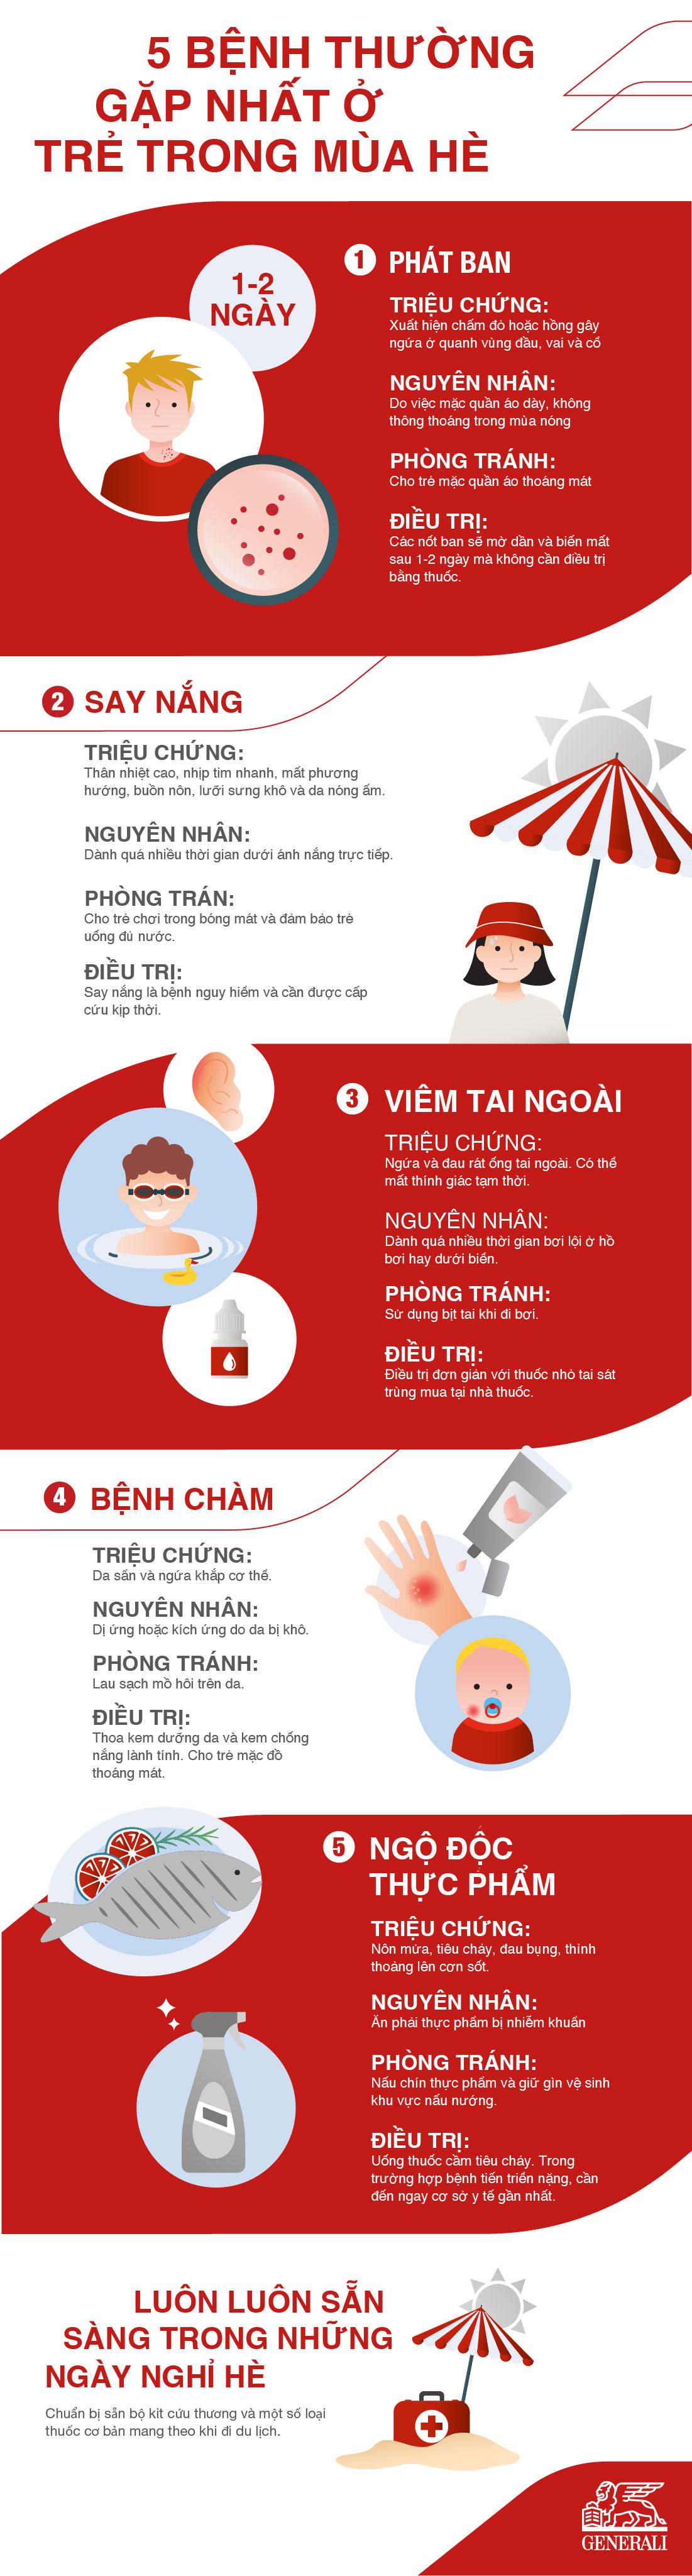 infographic-benh-mua-he-o-tre-em.jpg